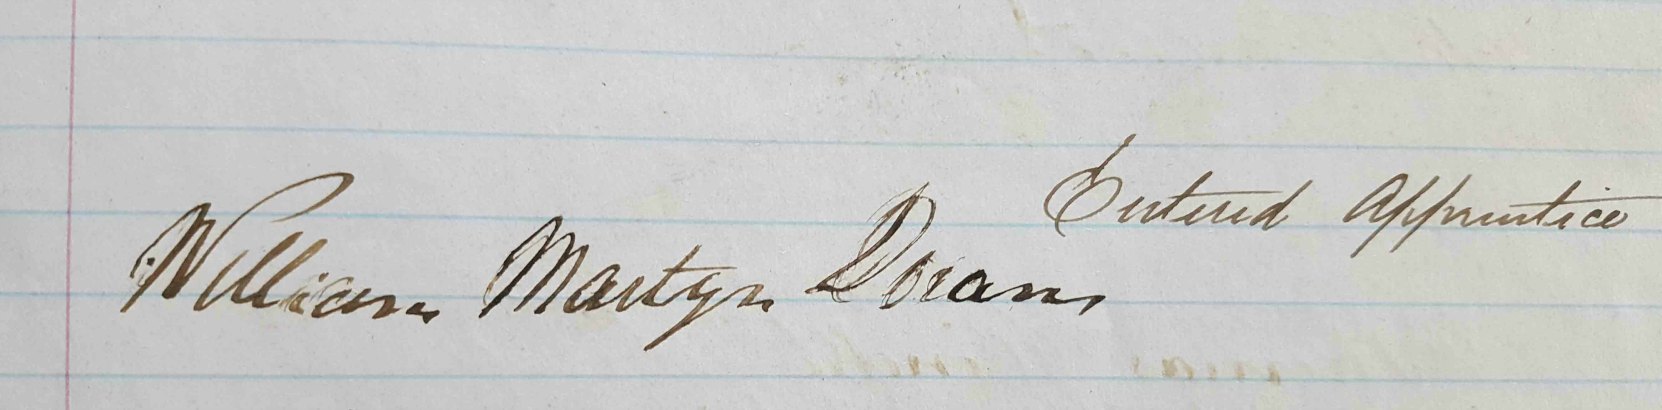 William Martyn Doran signature, from Nanaimo Lodge No. 1090 porch book (courtesy of Ashlar Lodge No. 3)